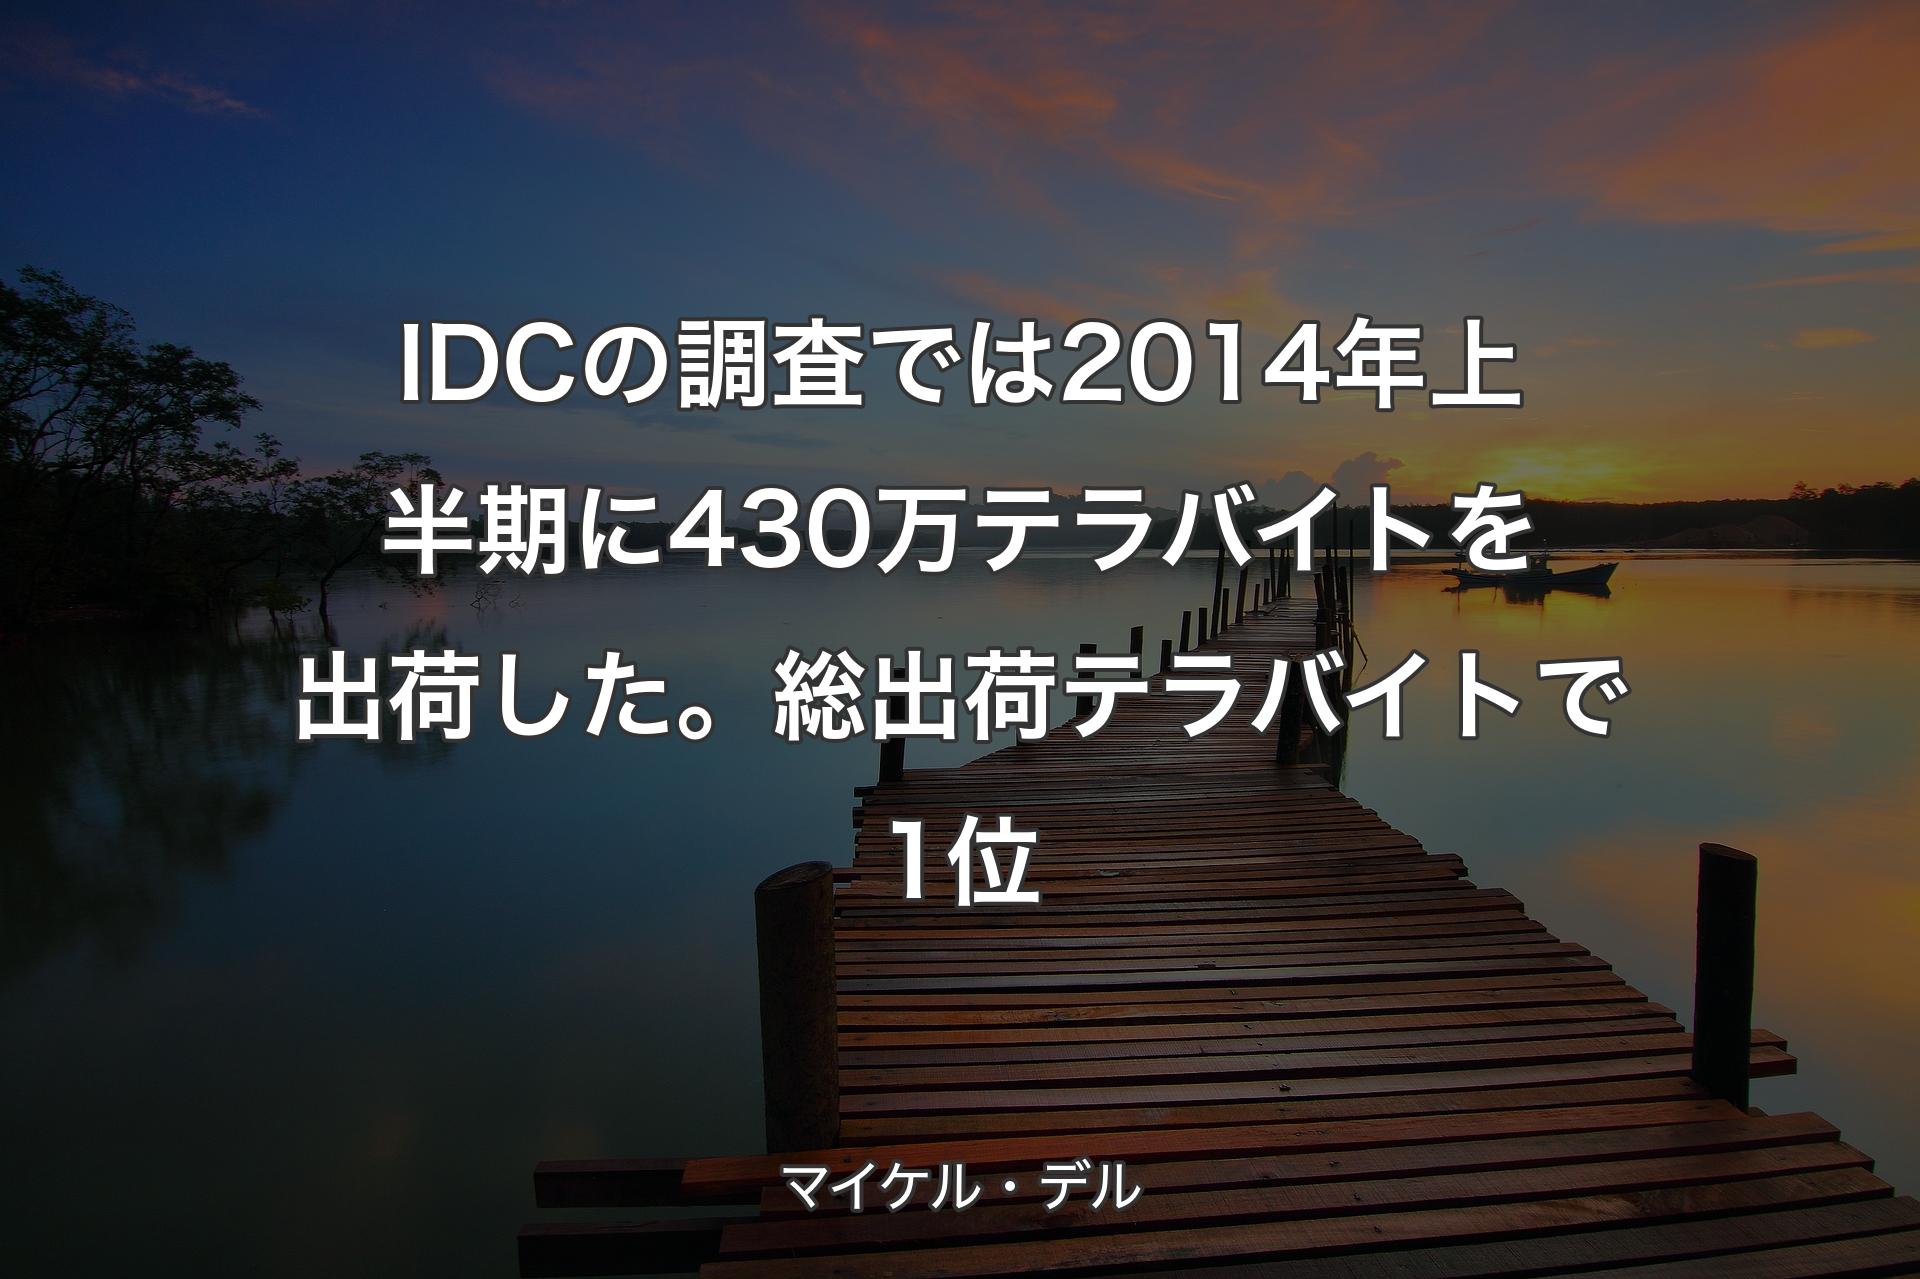 【背景3】IDCの調査では2014年上半期に430万テラバイトを出荷した。総出荷テラバイトで1位 - マイケル・デル